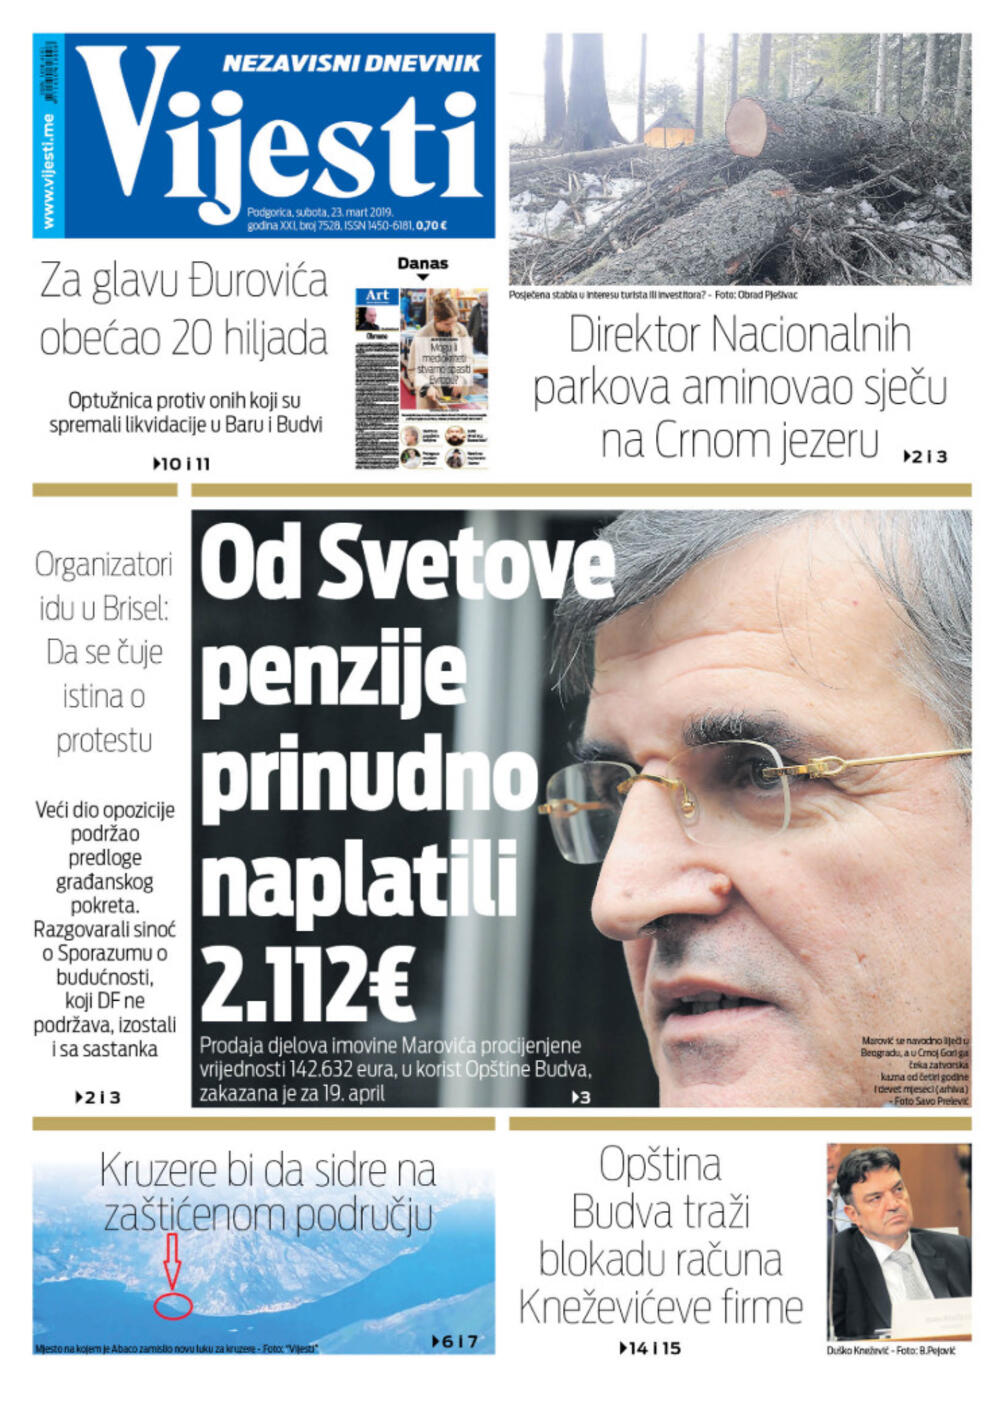 Naslovna strana "Vijesti" za 23. mart